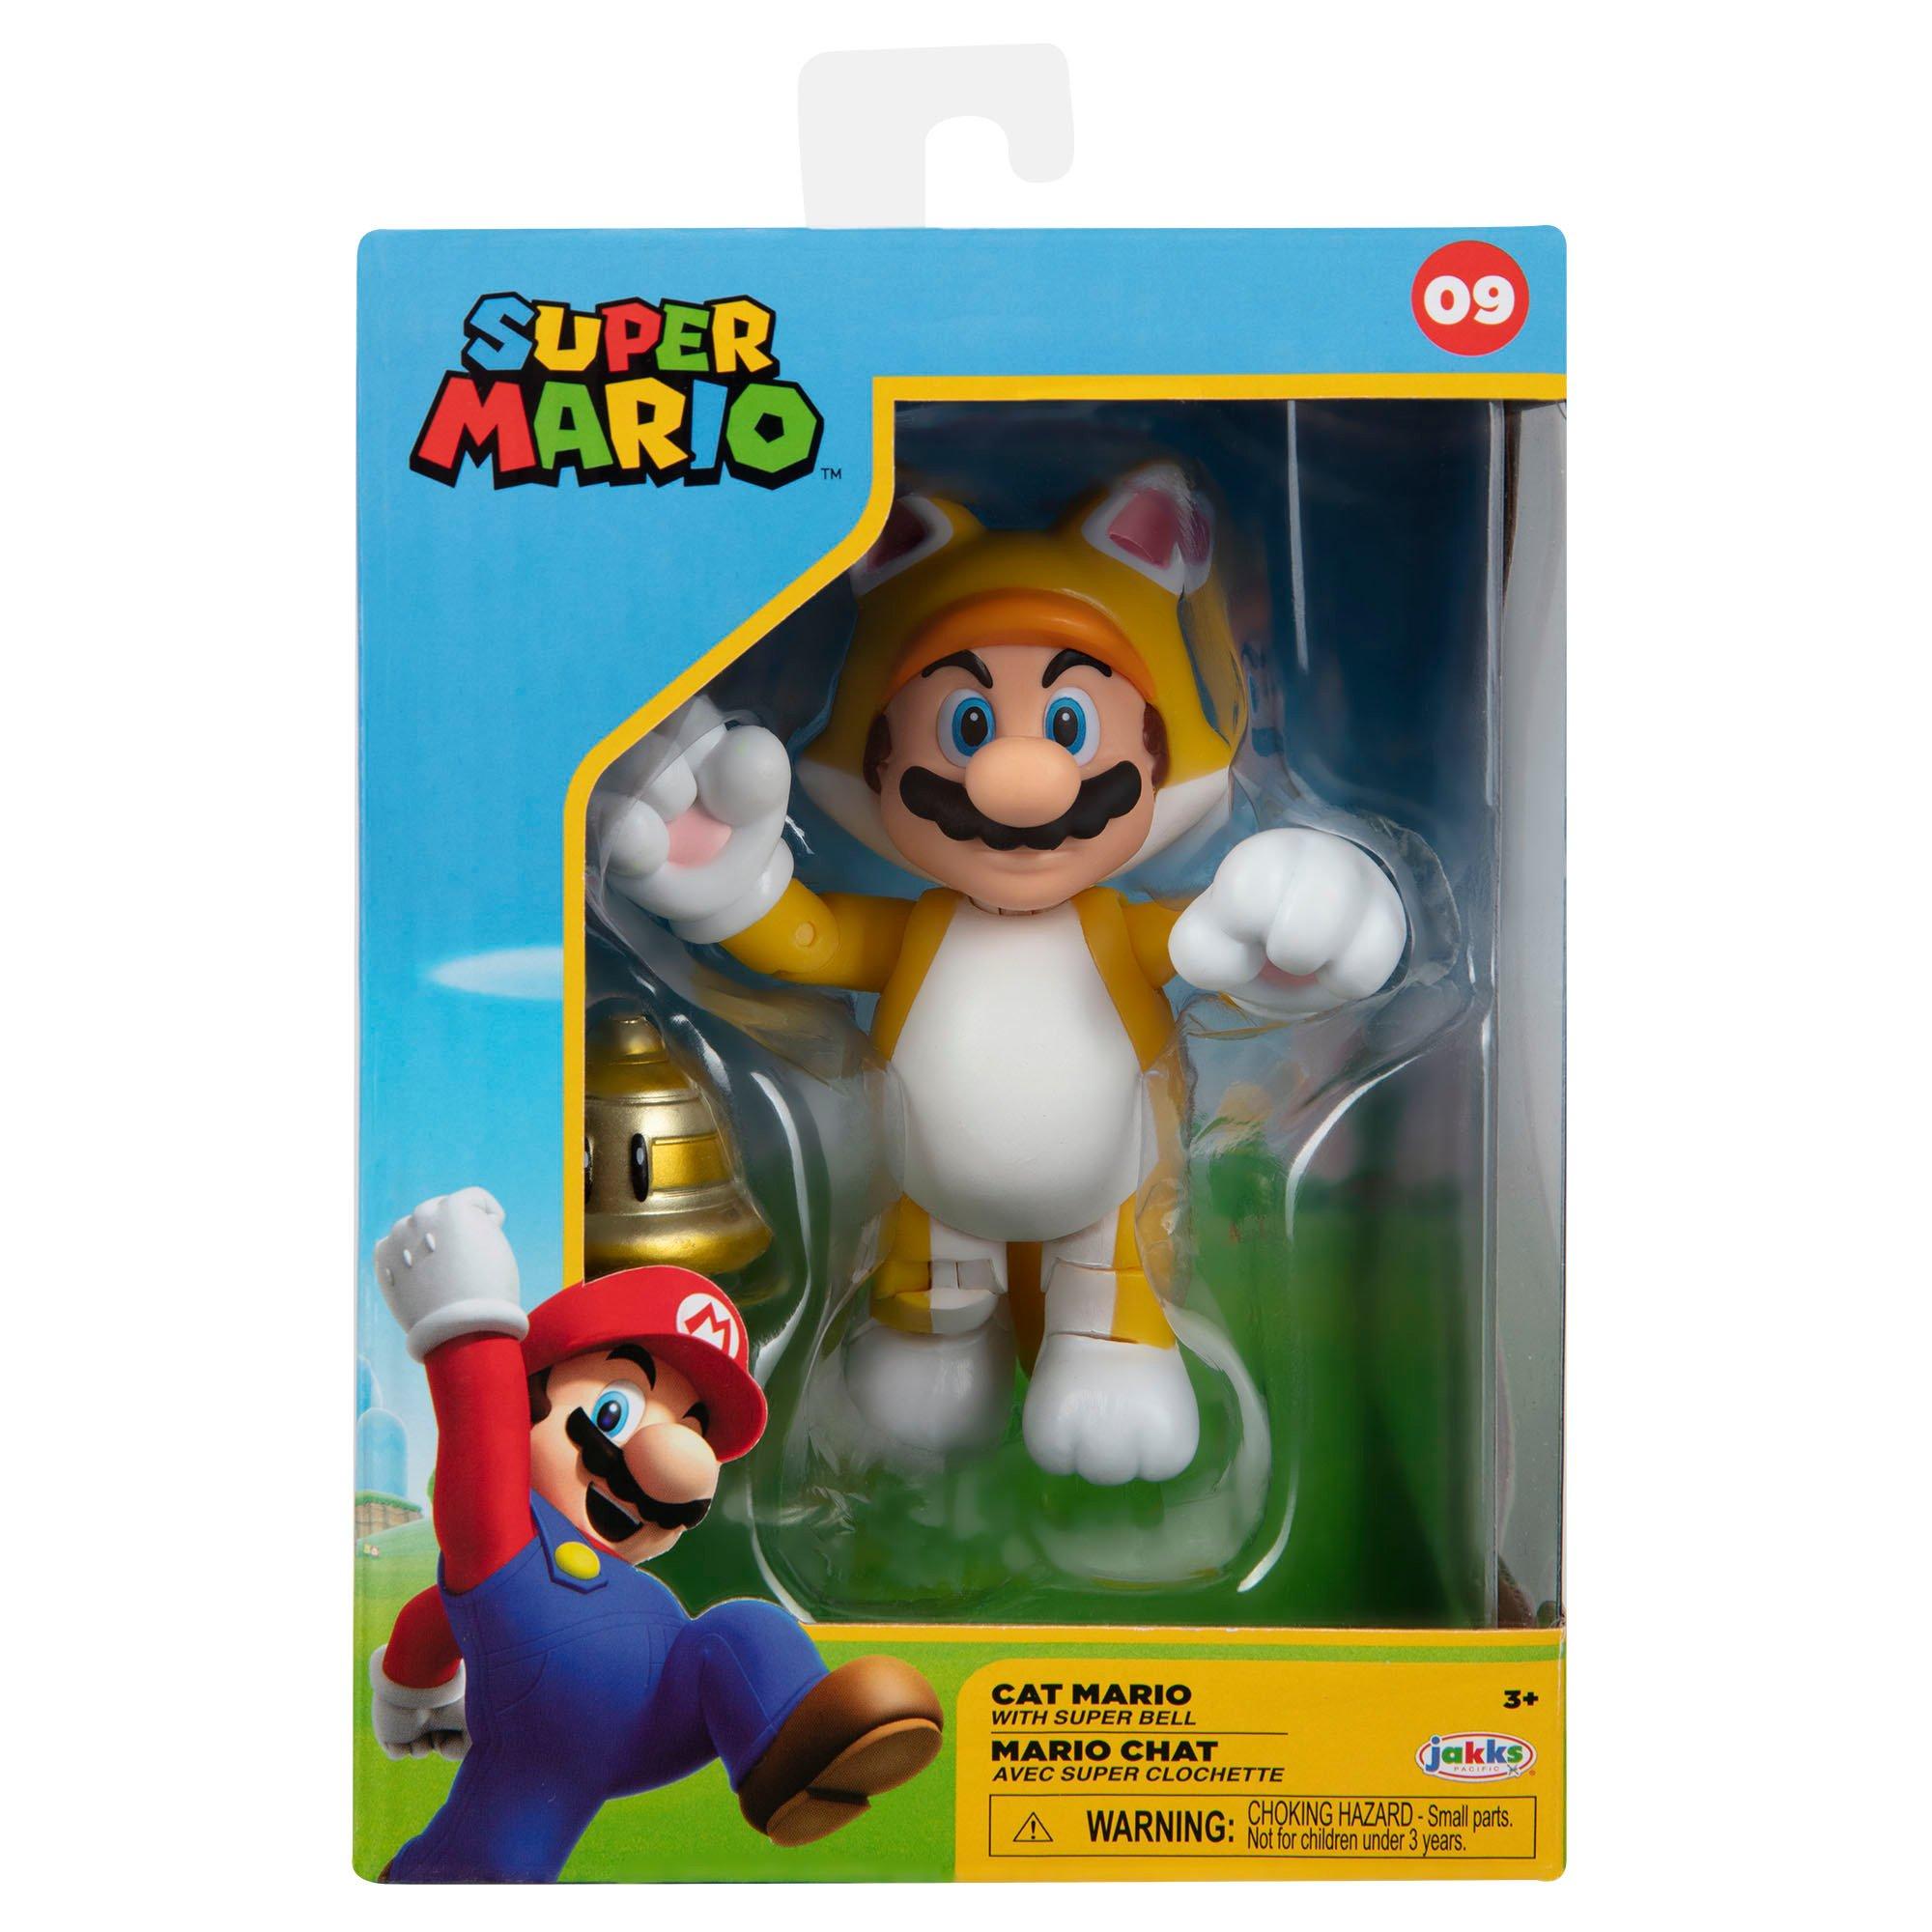 Super Mario Cat Mario with Super Bell Action Figure